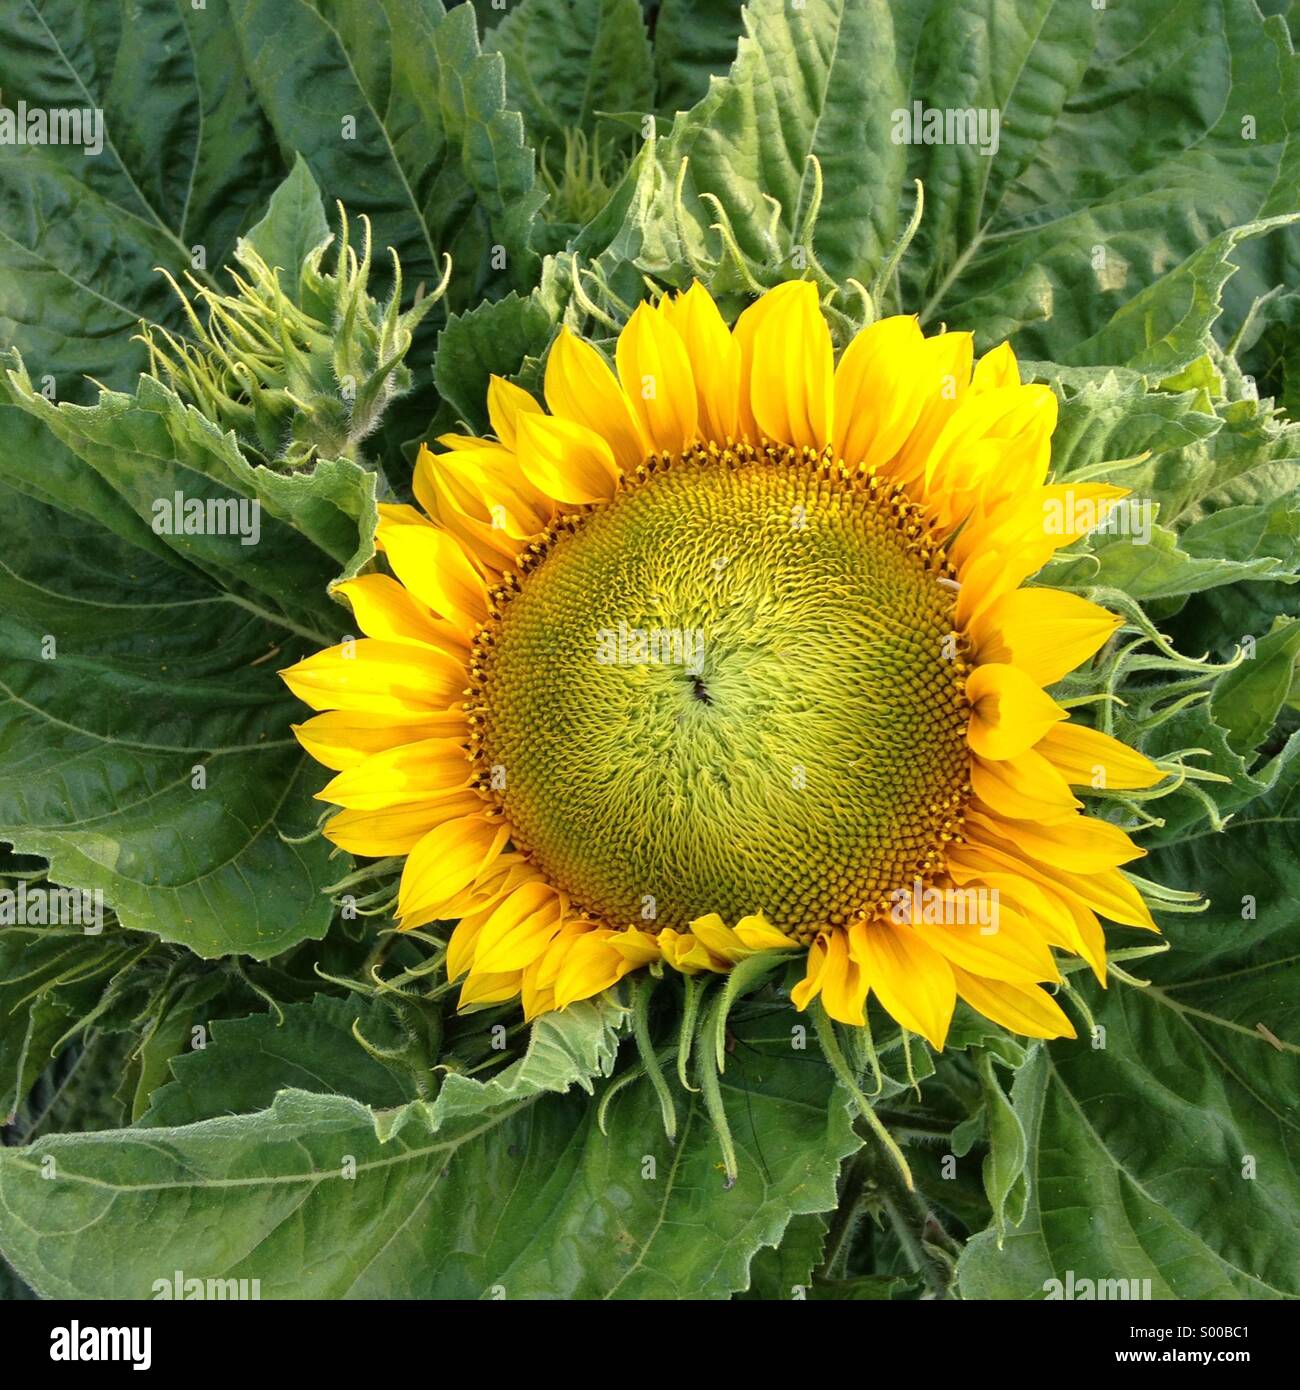 Sunflower, California Stock Photo